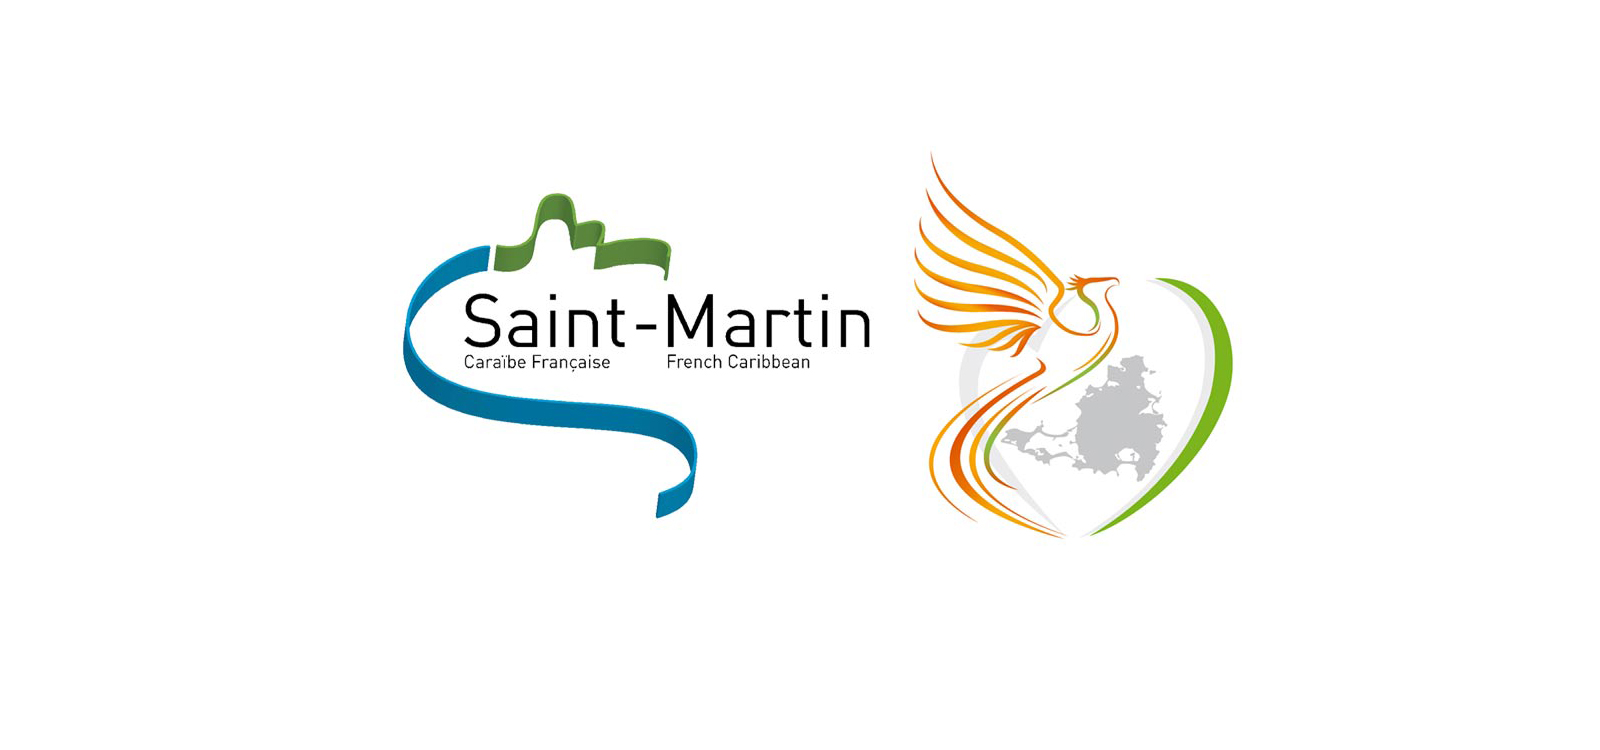 Organisation de la Collectivité de Saint-Martin dans le cadre des mesures de lutte contre le coronavirus COVID-19 instaurées sur le territoire